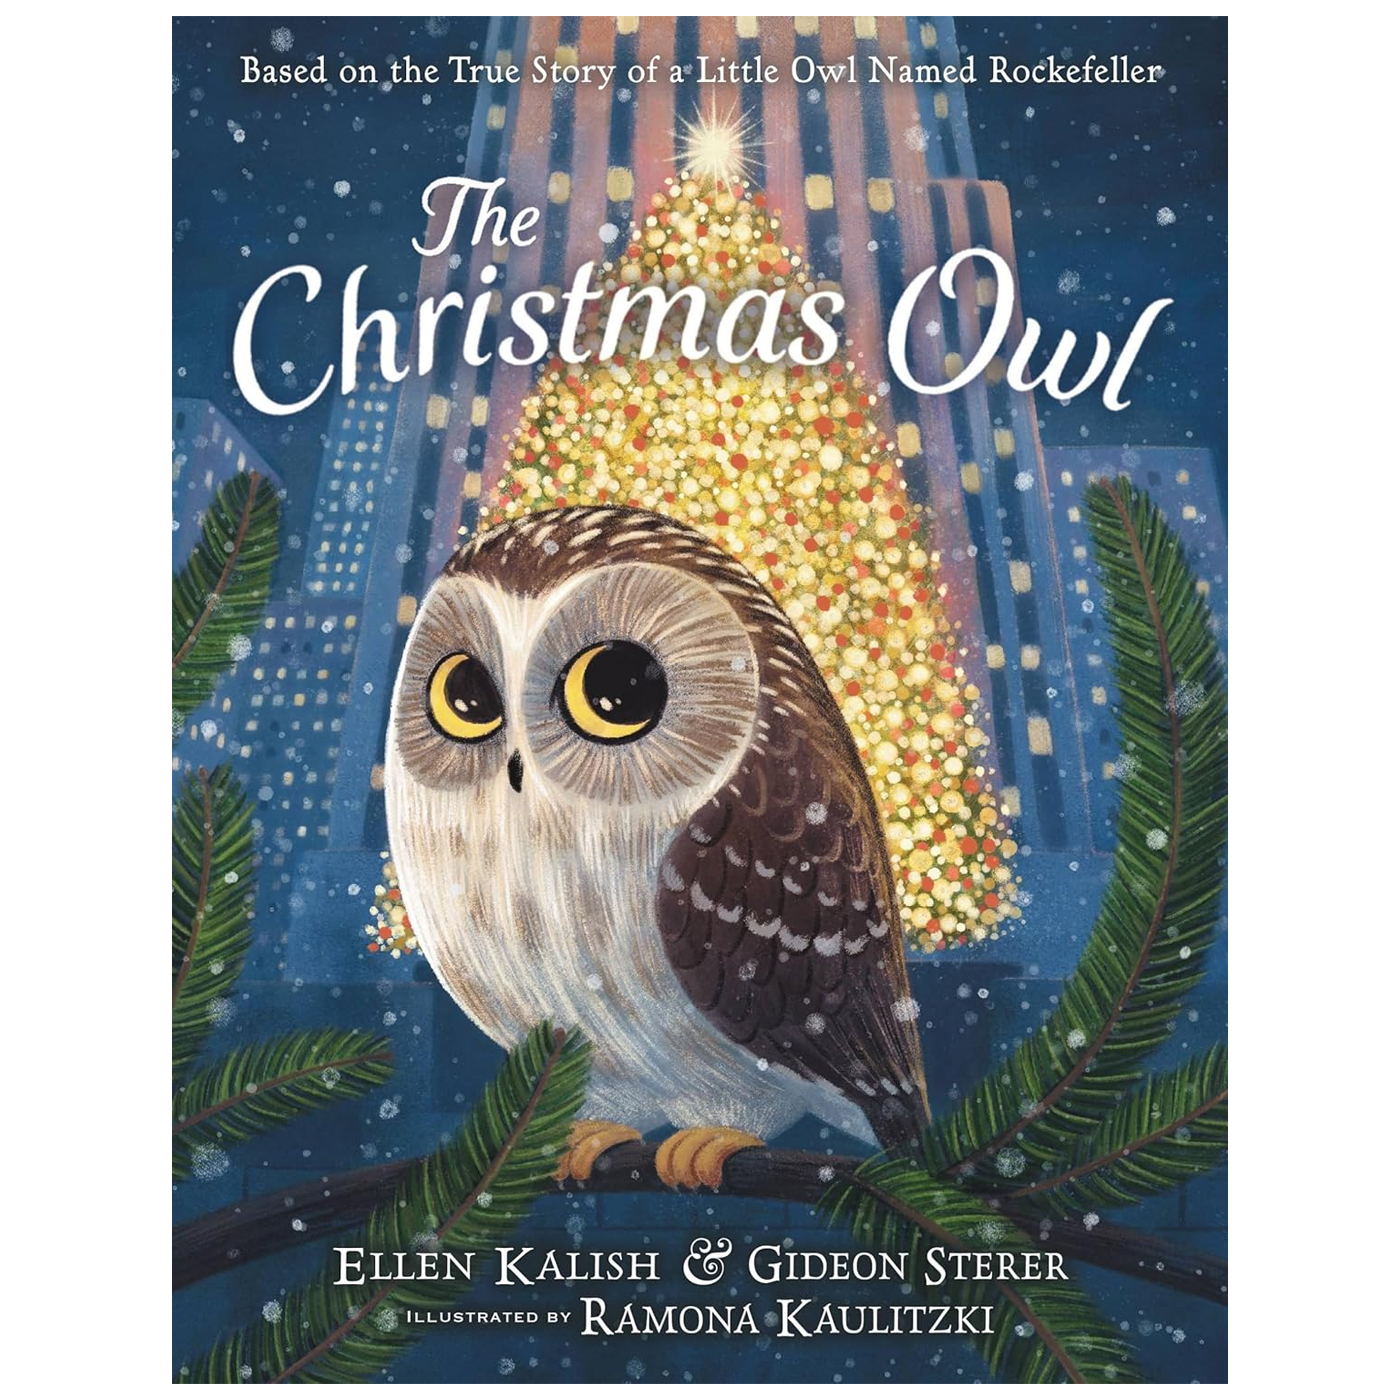  The Christmas Owl